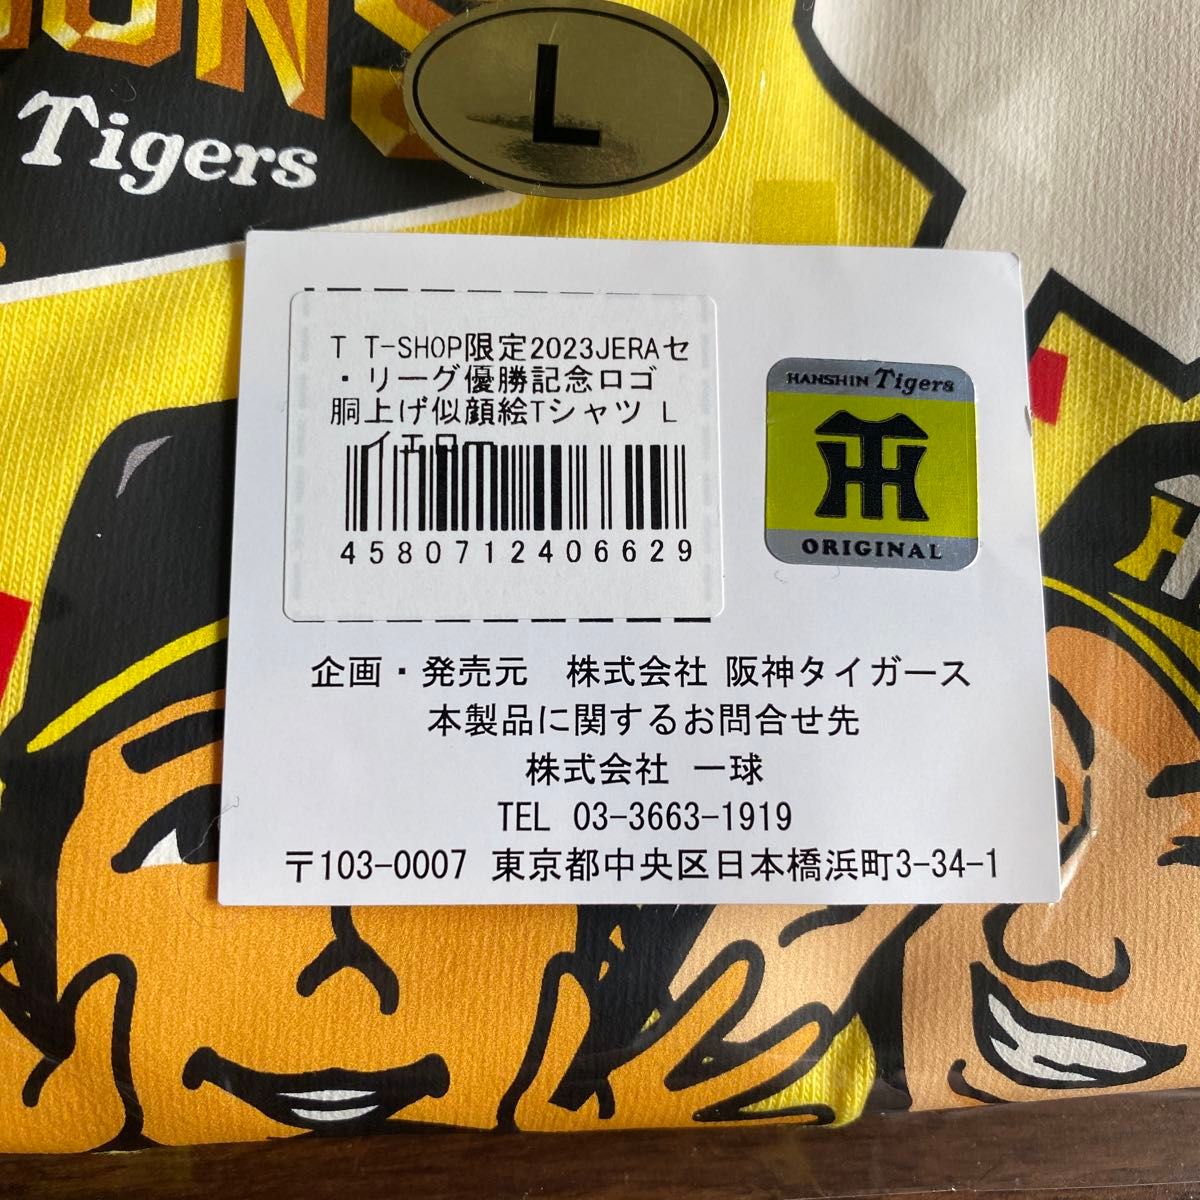 阪神タイガース T-SHOP限定2023JERAセ・リーグ優勝記念ロゴ胴上げ 